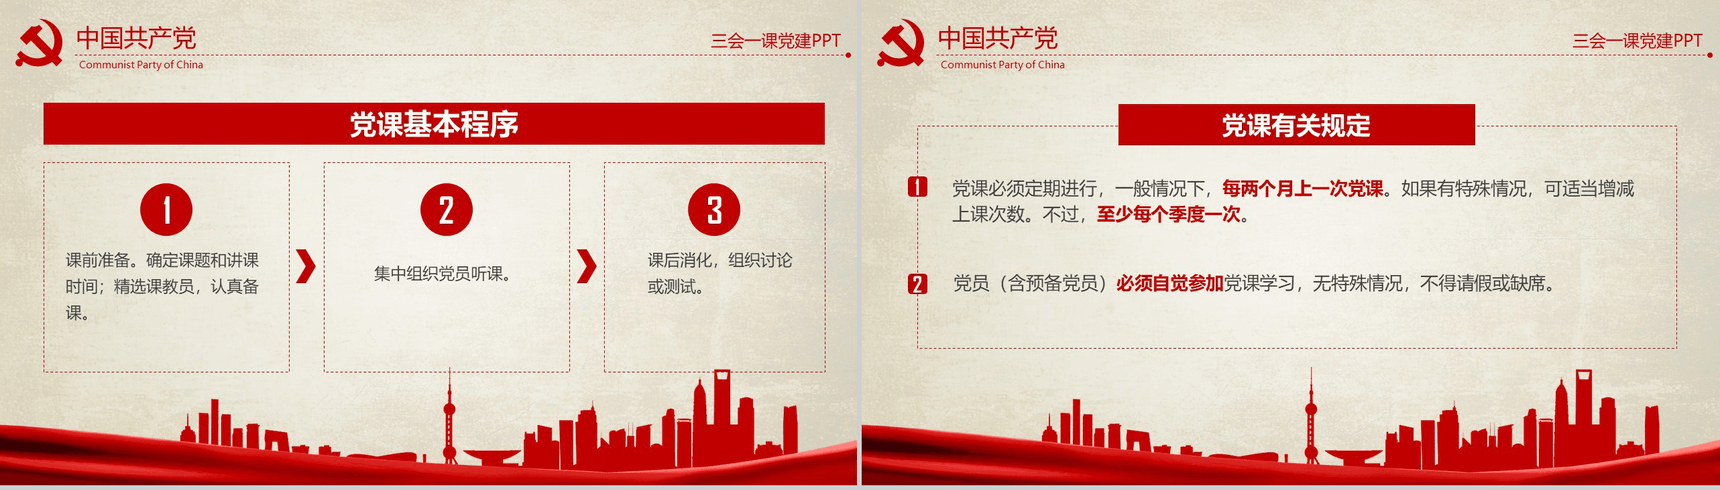 农村基层党建知识红色反腐思想指南和行动纲领学习教育PPT模板-11